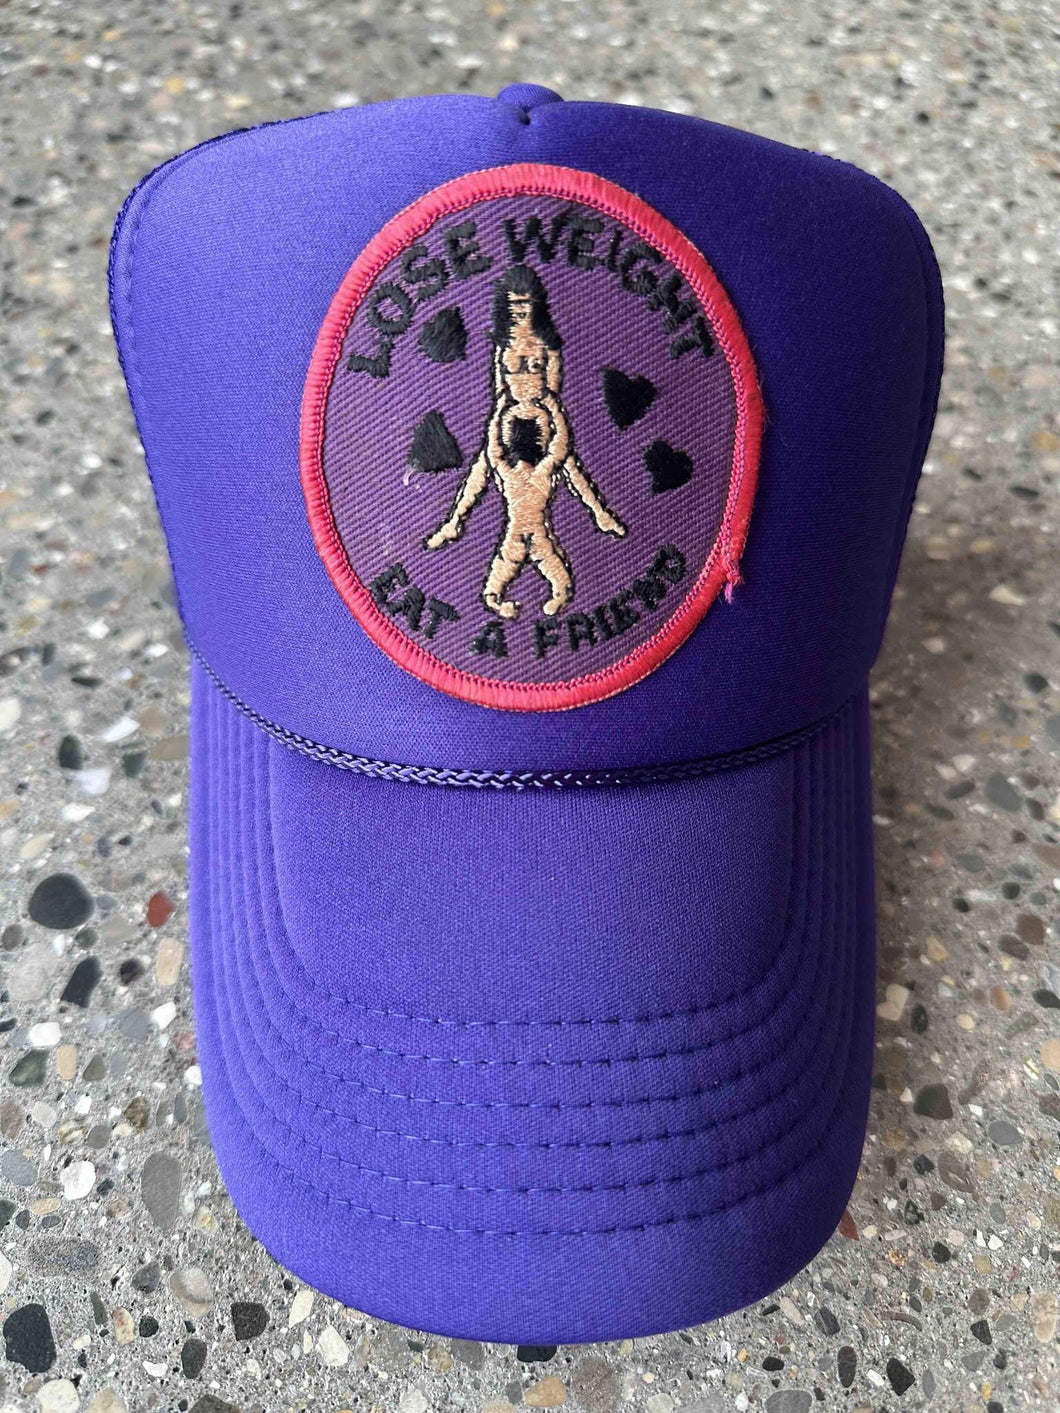 ABC Vintage Lose Weight Vintage Patch Trucker Hat (Violet) ABC Vintage 